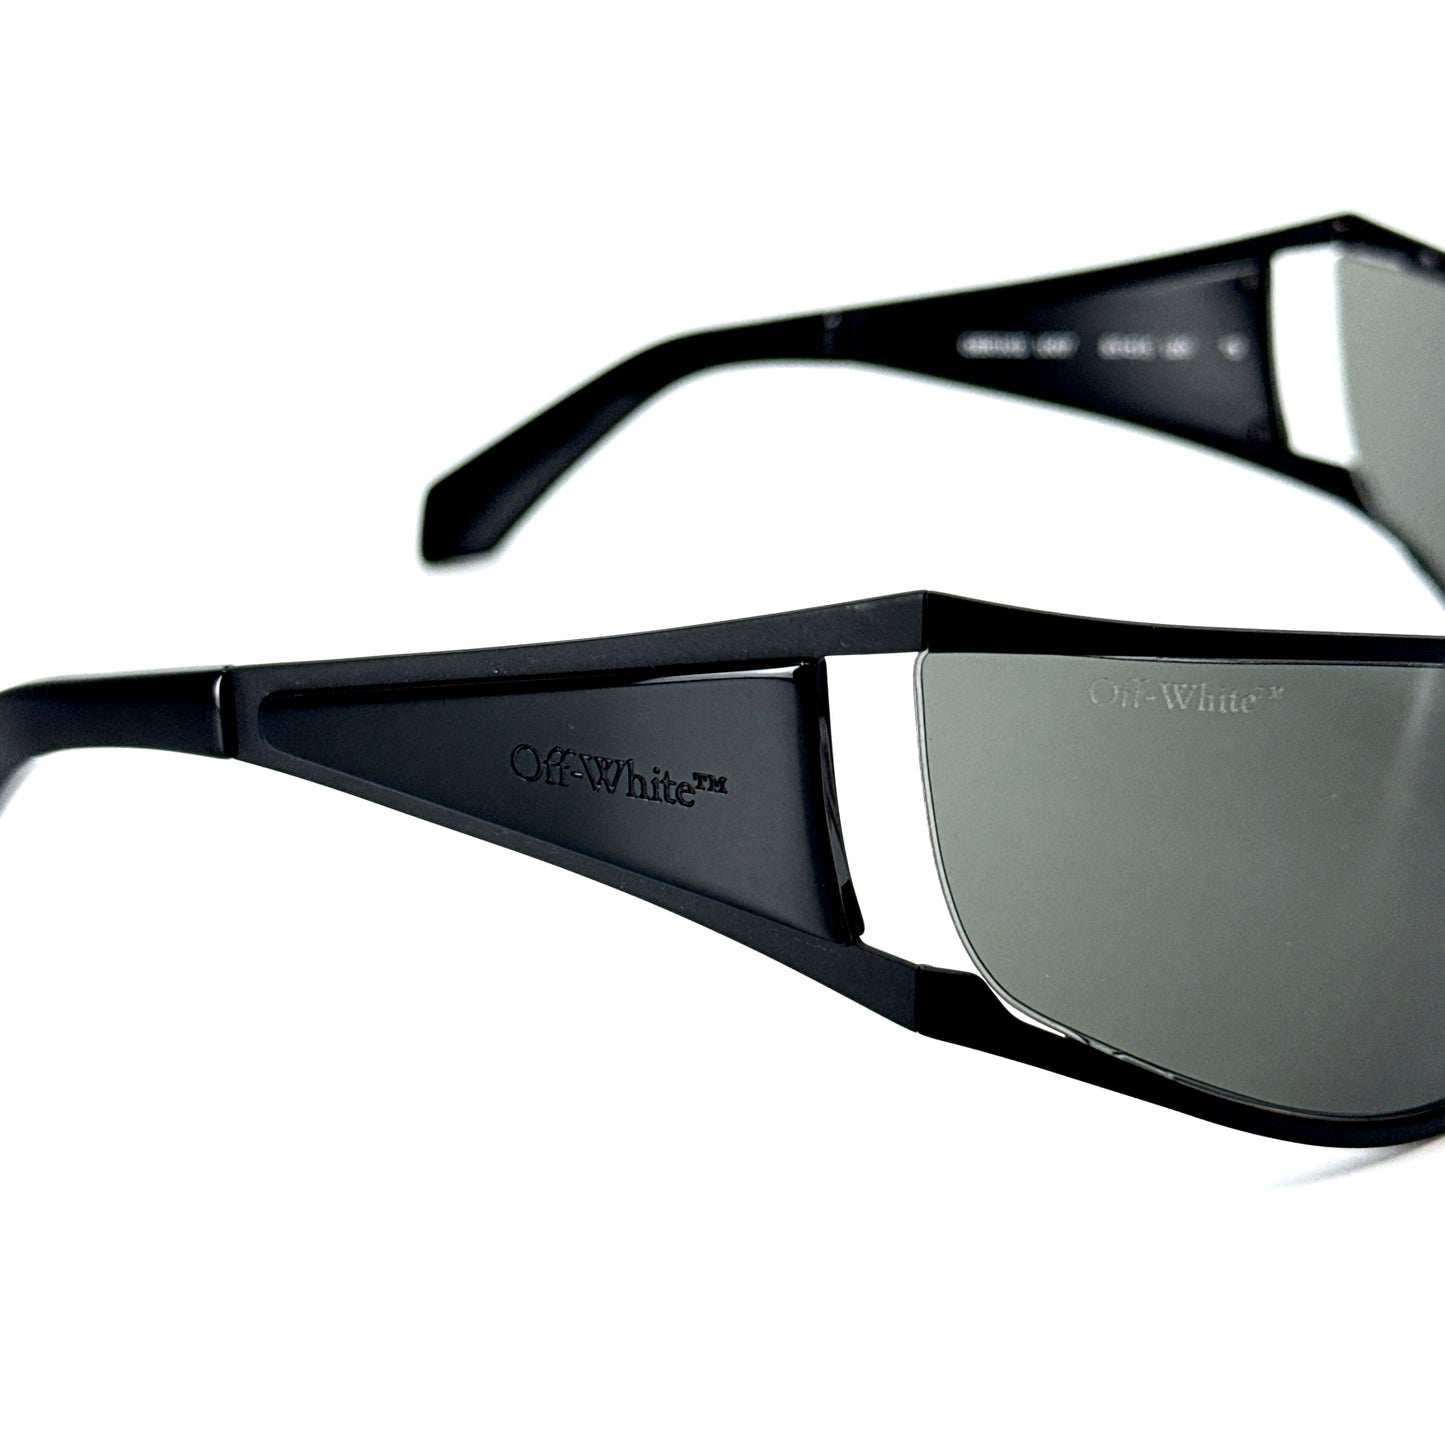 OFF-WHITE Sunglasses Luna OERI102 1007